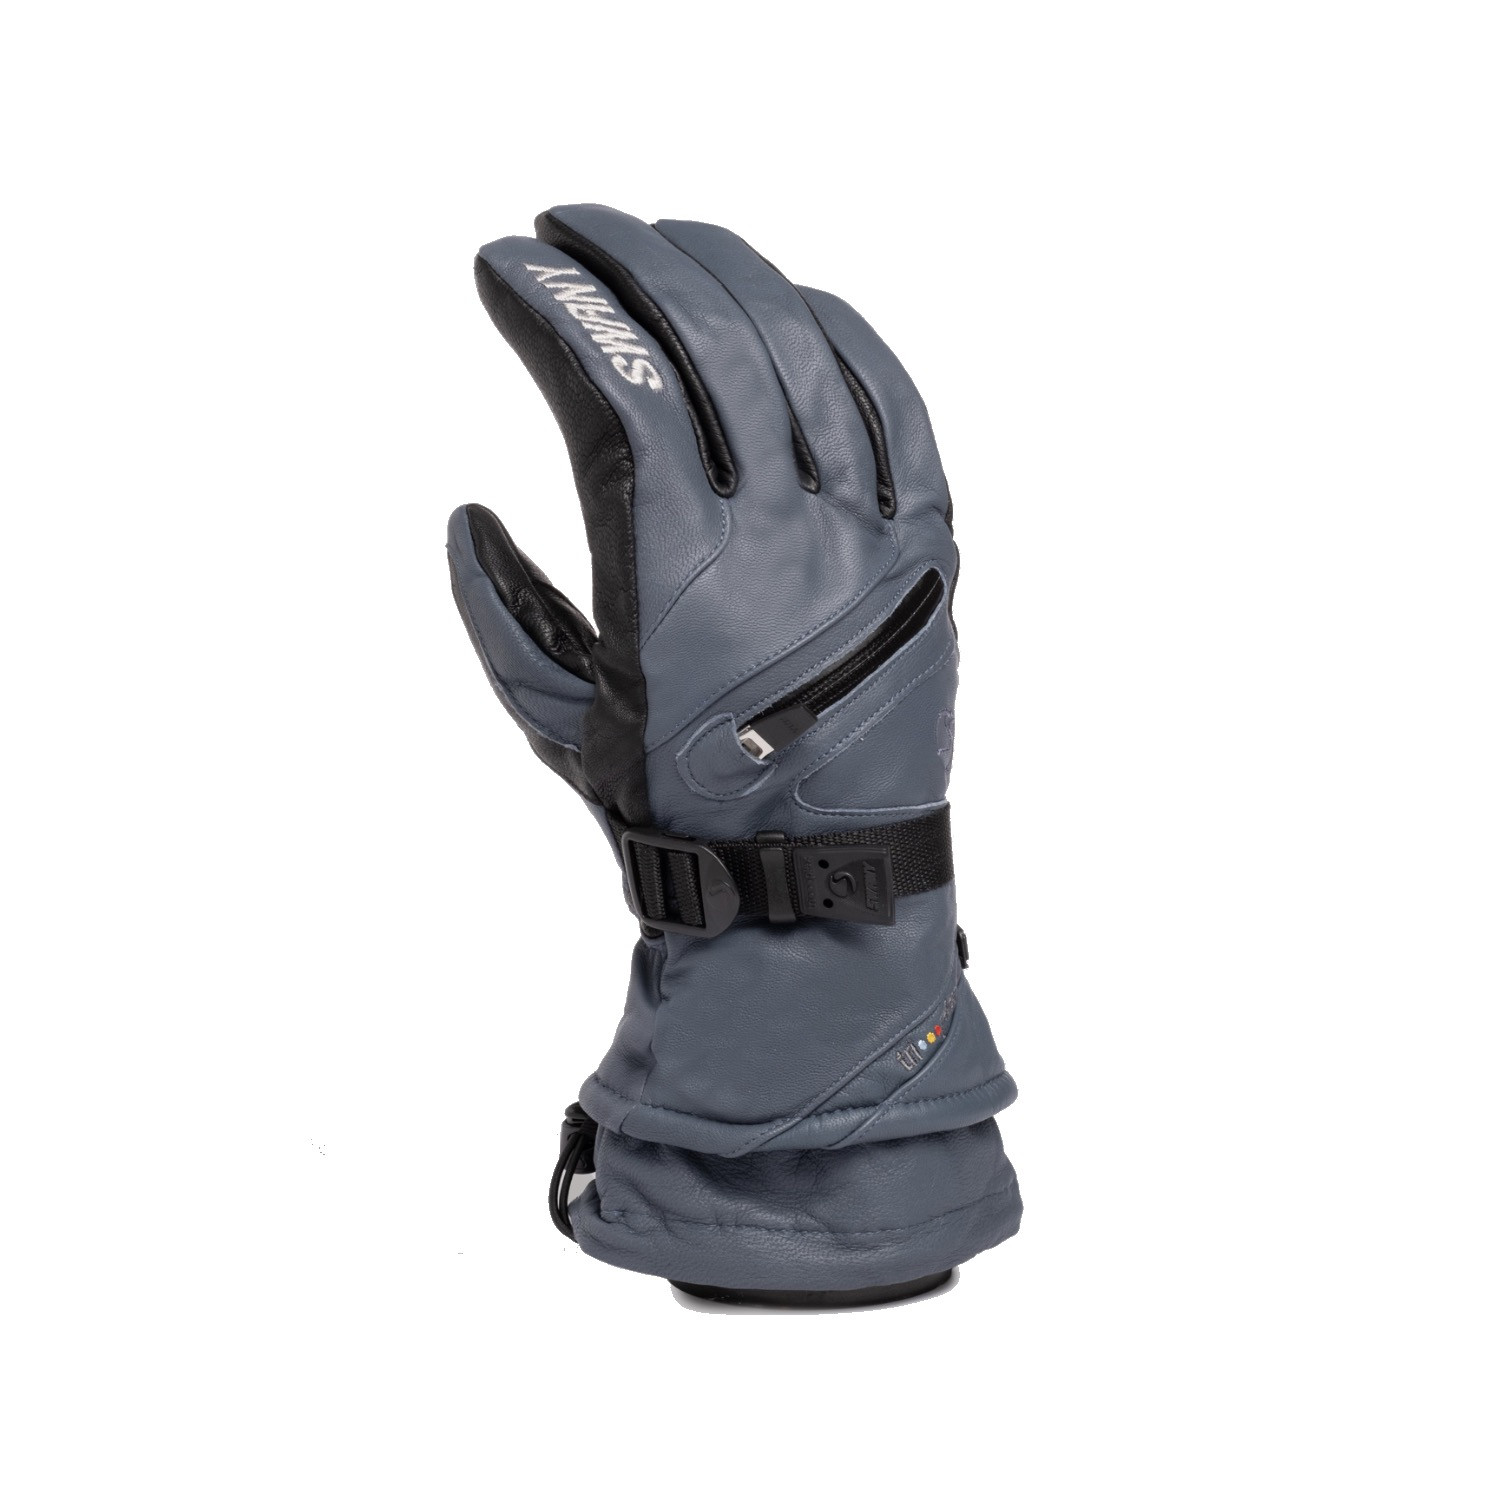 Gloves | The Monster Ski